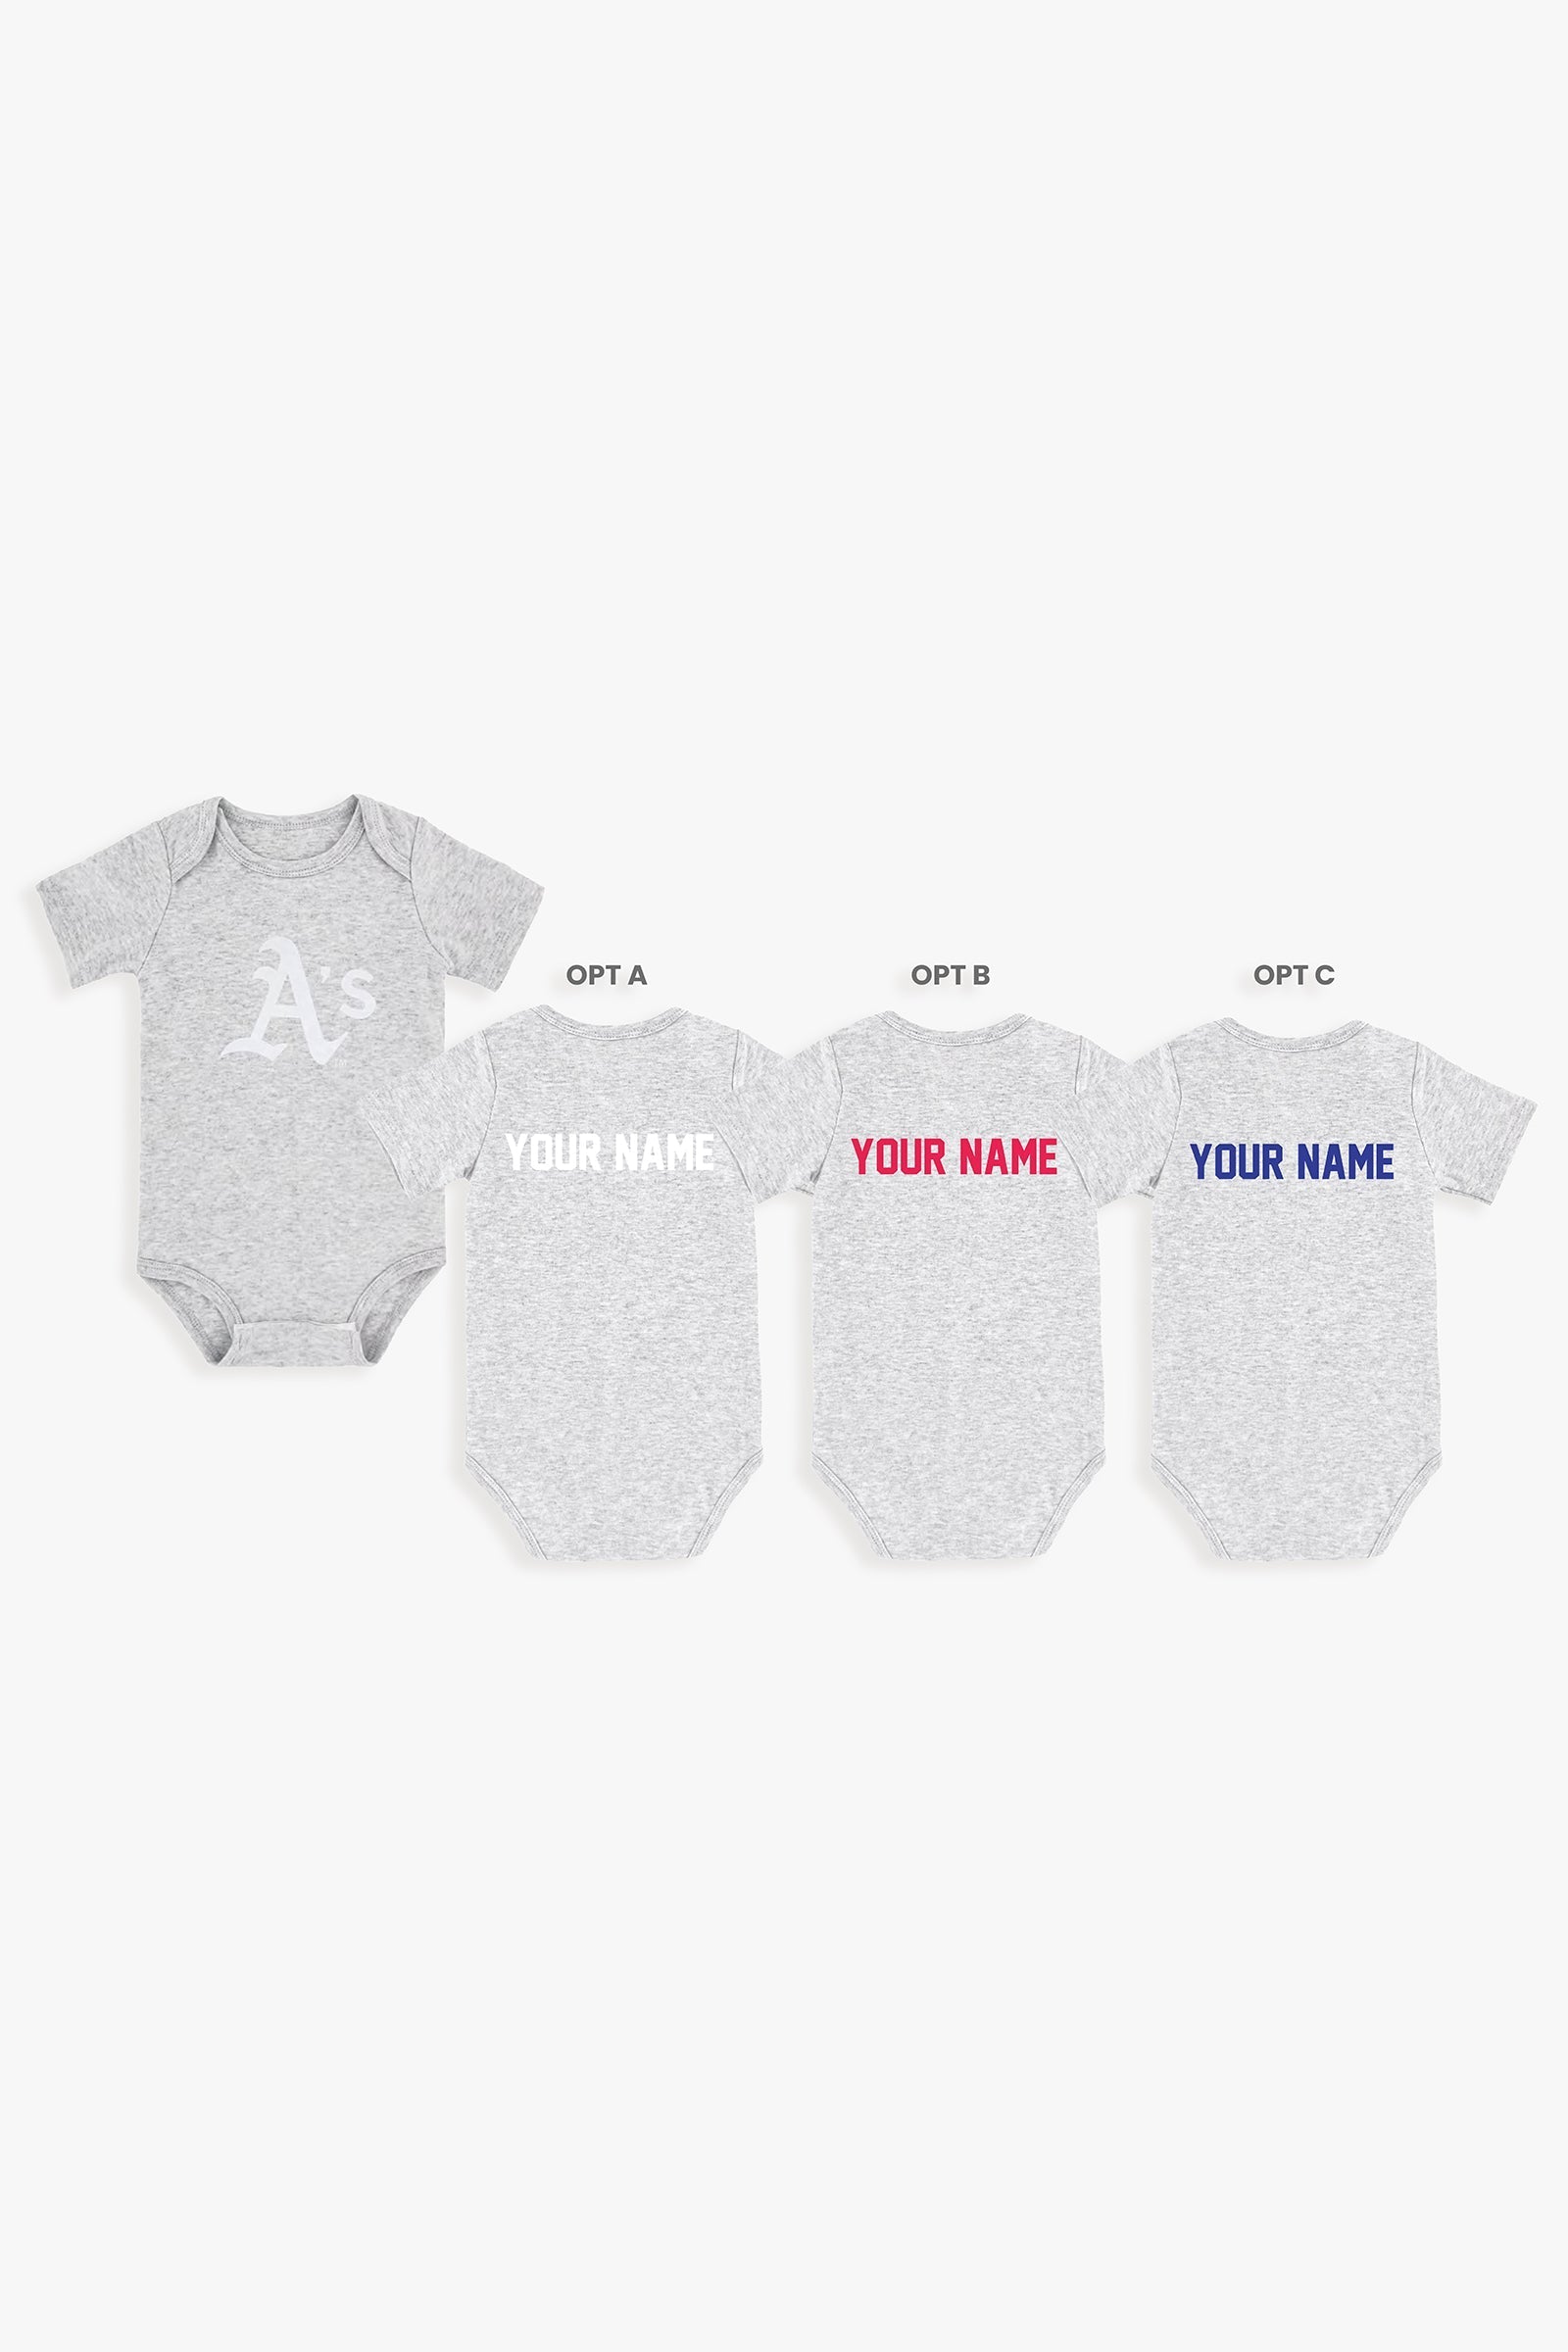 Gertex Customizable MLB Baby Onesie Bodysuit in Grey (18-24 Months)